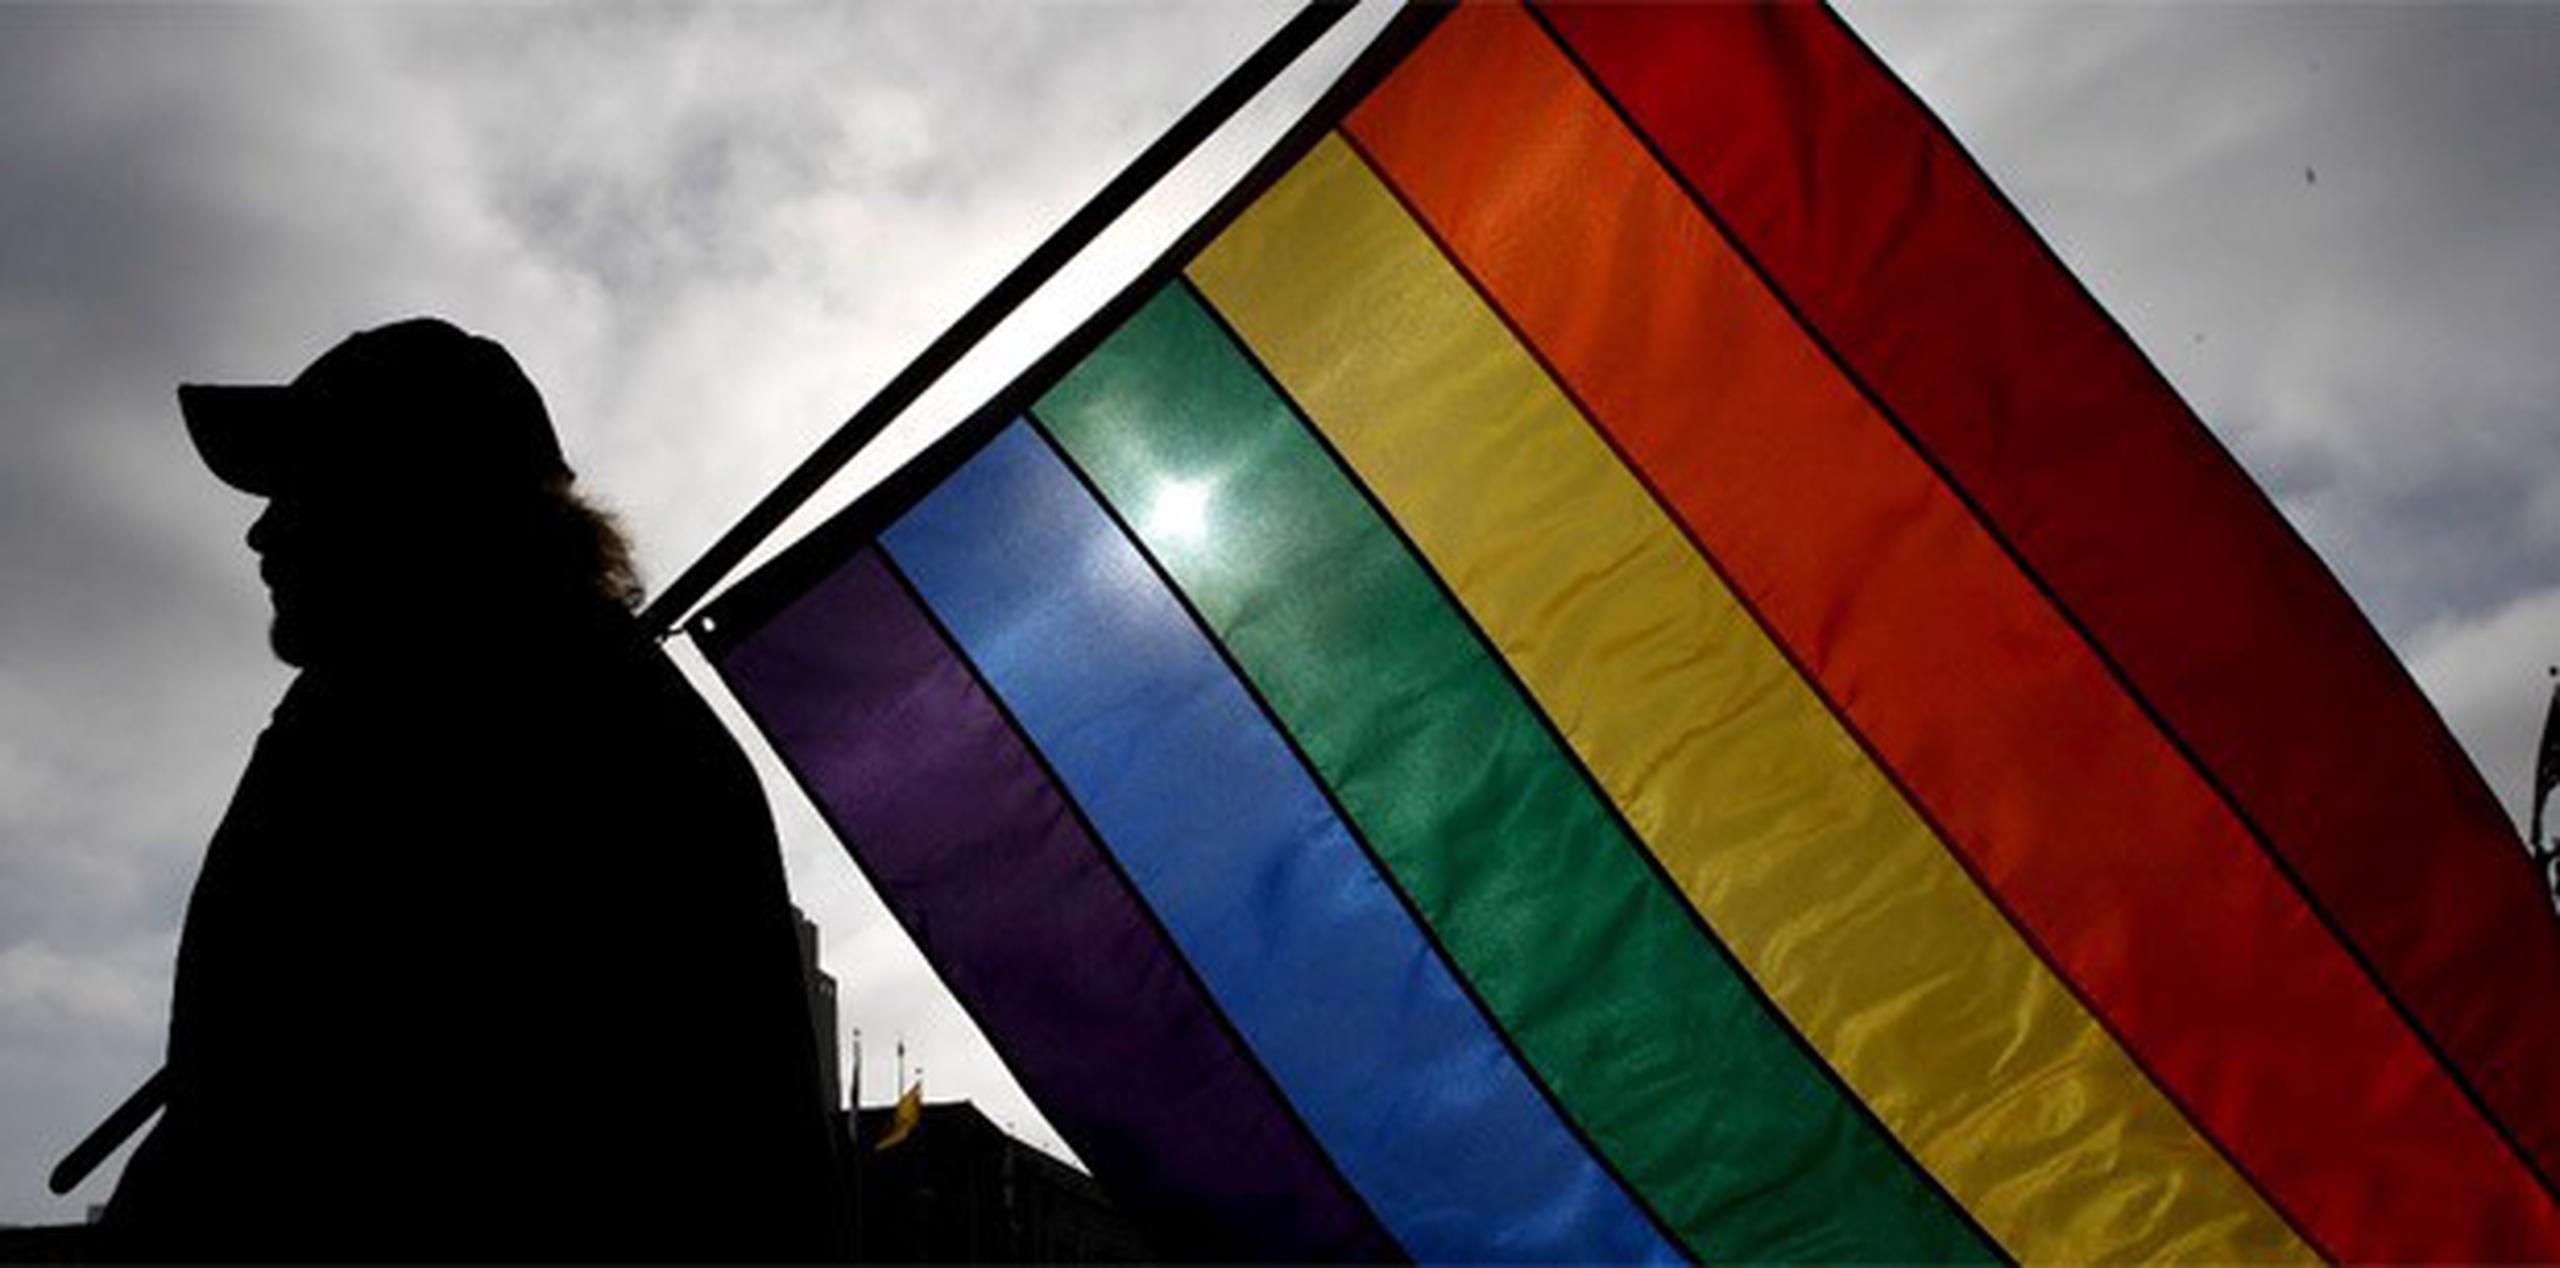 Ser gay es rechazado por el 98 por ciento de los encuestados en Ghana, pero únicamente por un seis por ciento en España. (Archivo)